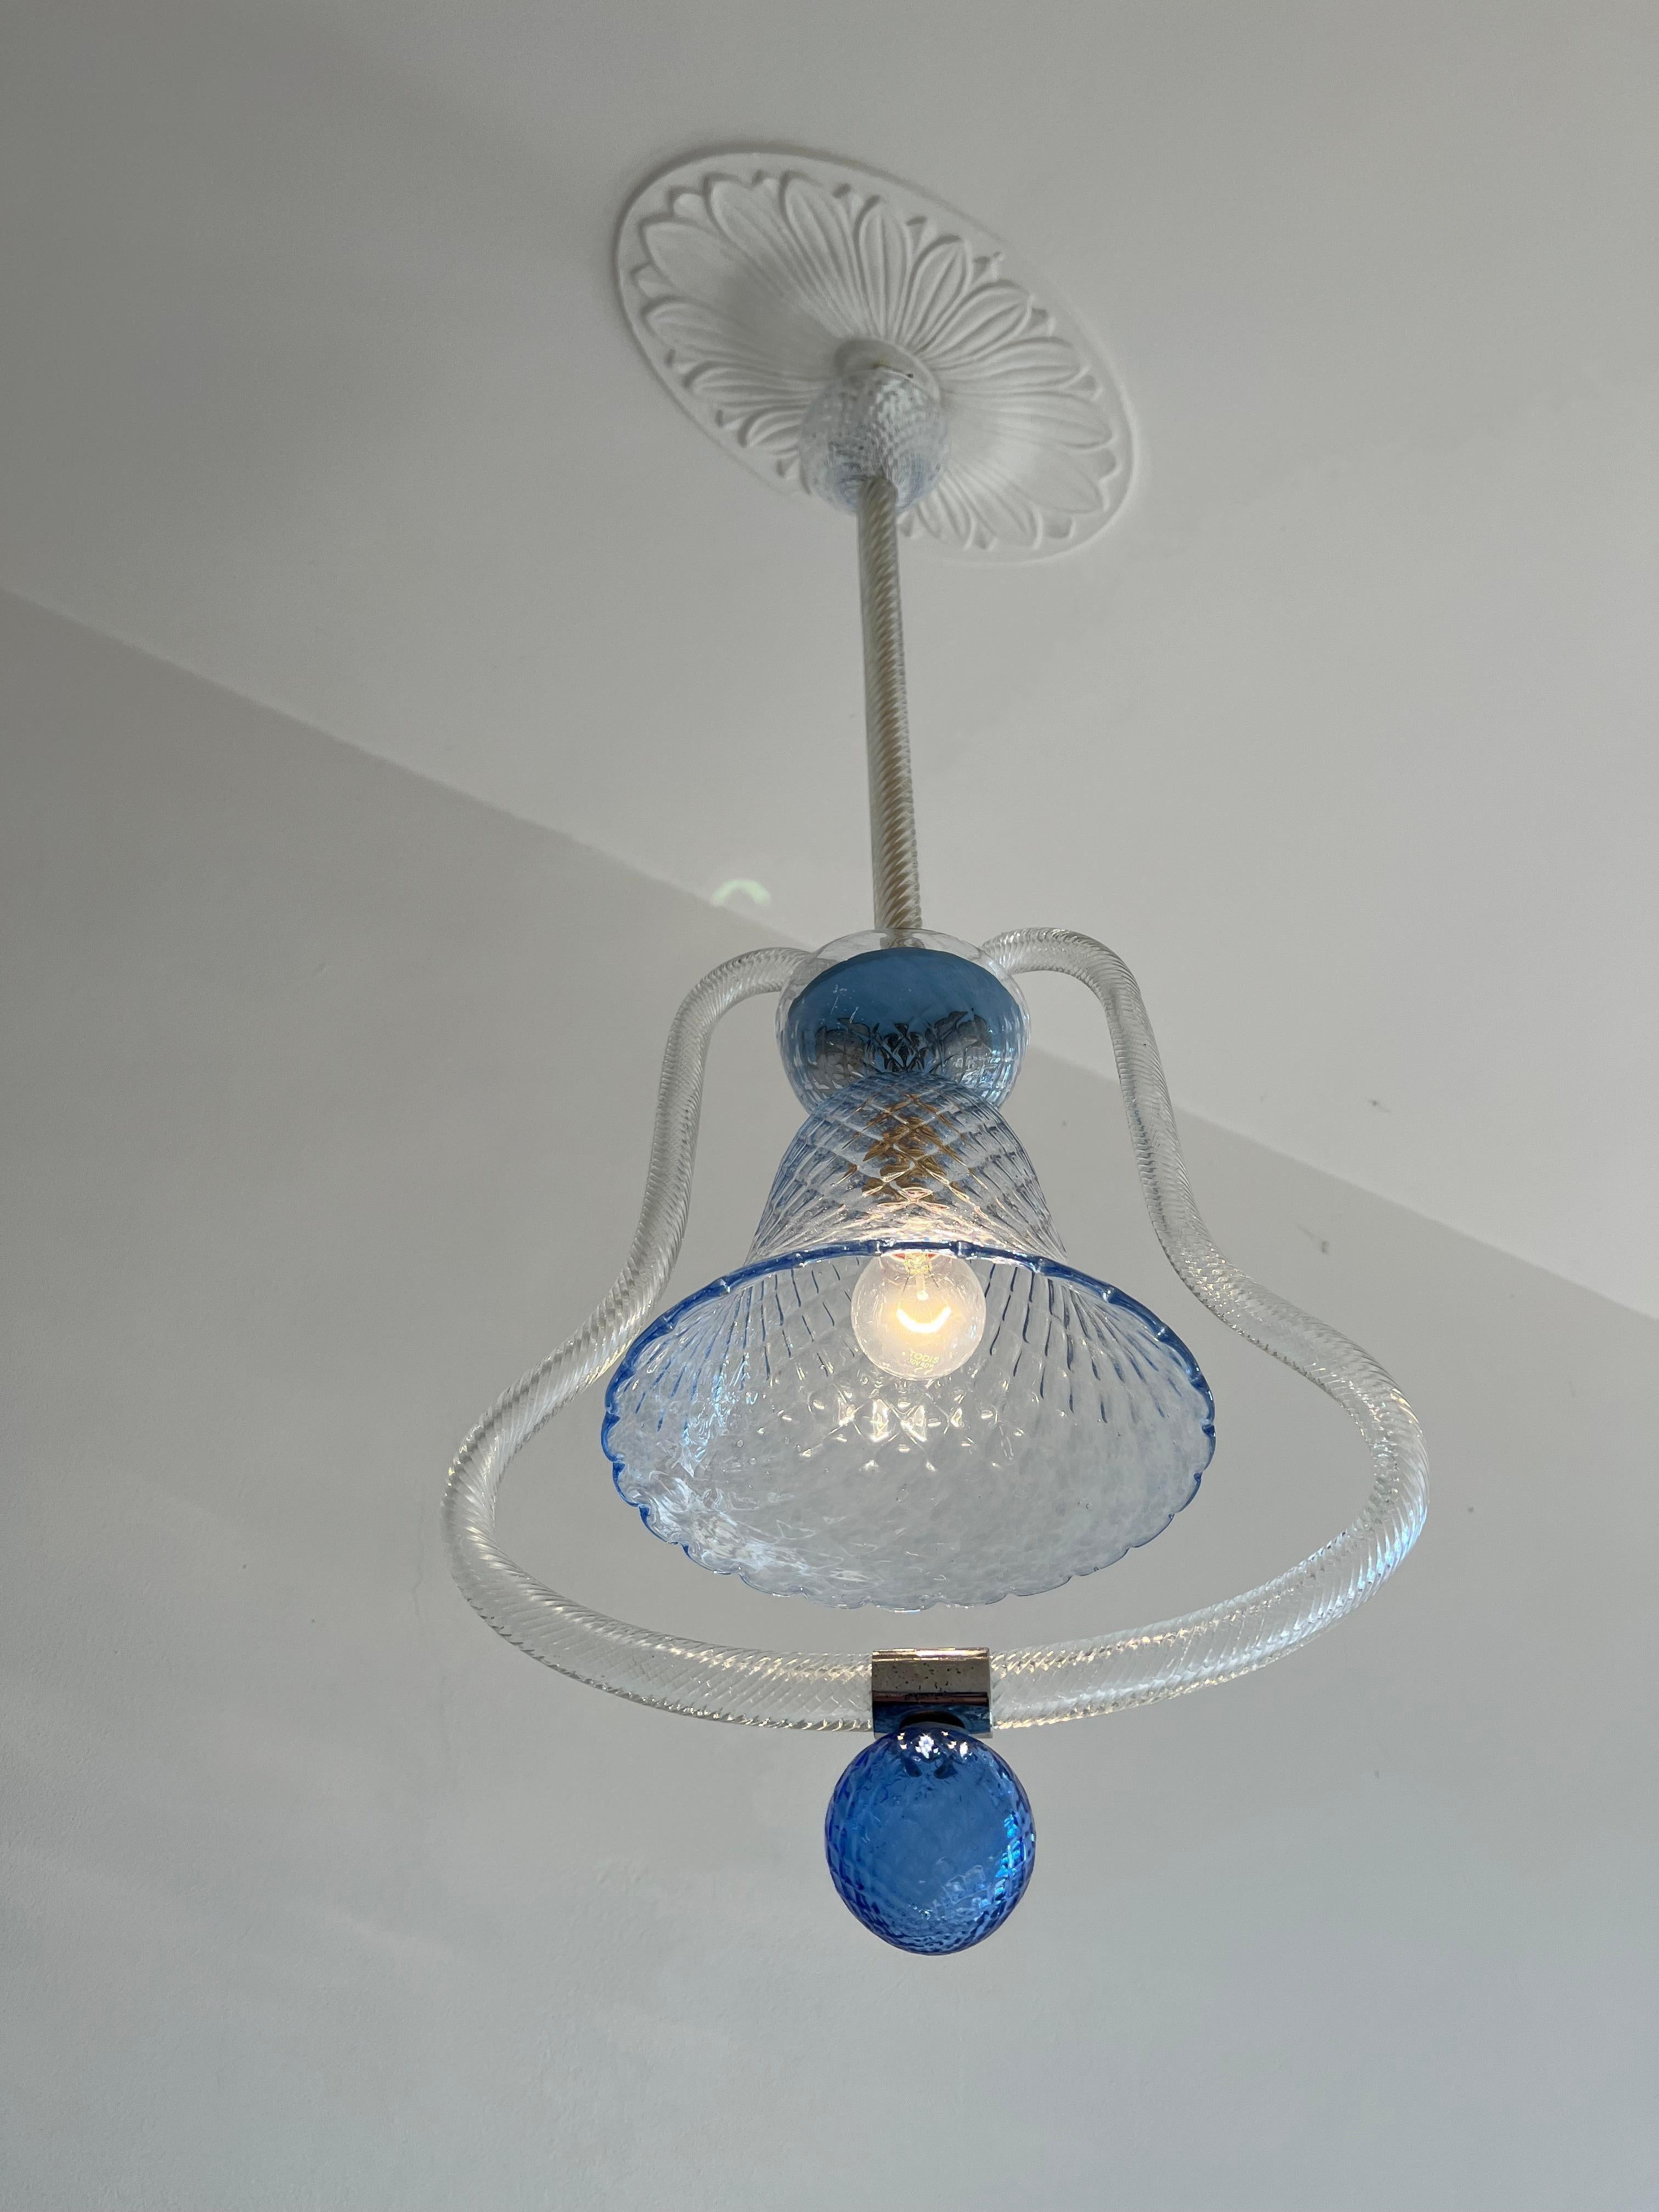 Lustre lanterne élégant. Une lampe à placer dans un coin de la maison ou de la salle de bain pour lui donner une aura magique.


